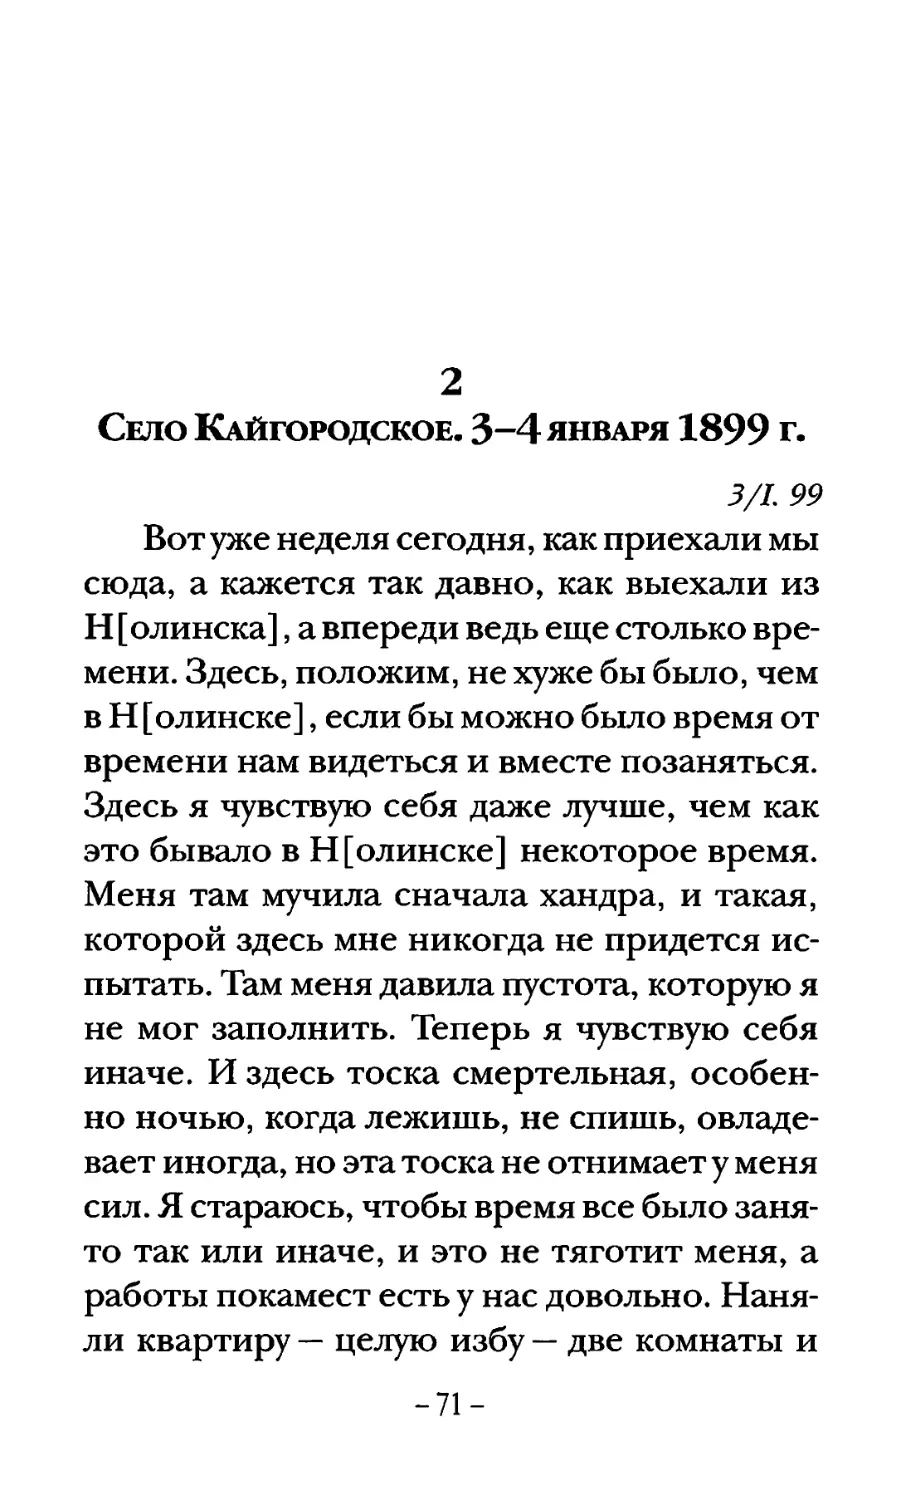 Село Кайгородское. 3-4 января 1899 г.